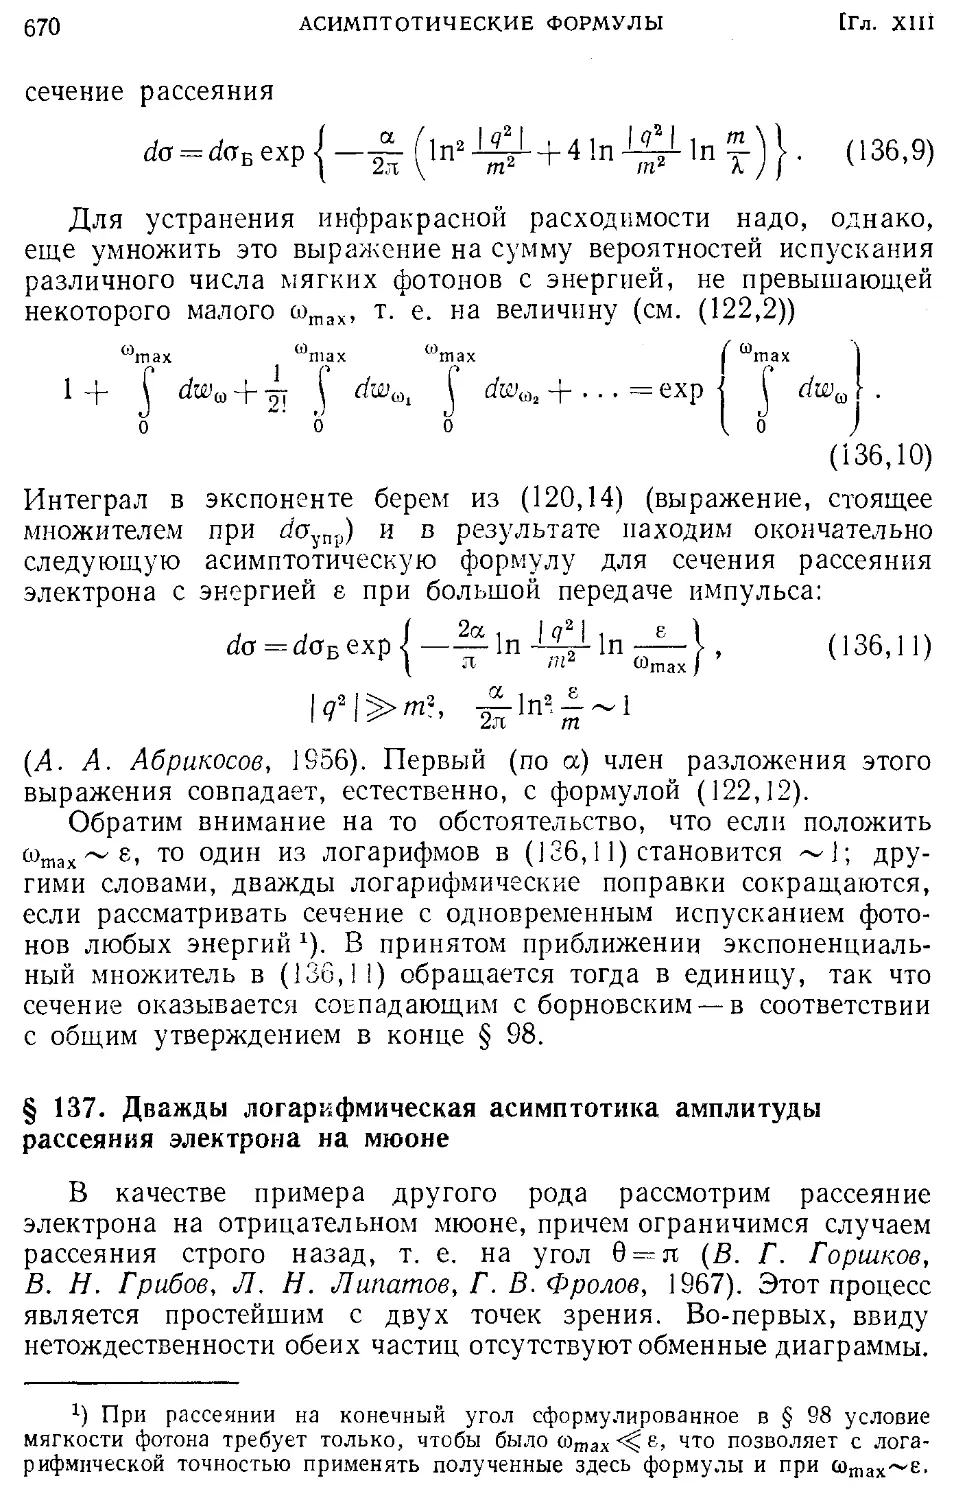 § 137. Дважды логарифмическая асимптотика амплитуды рассеяния электрона на мюоне